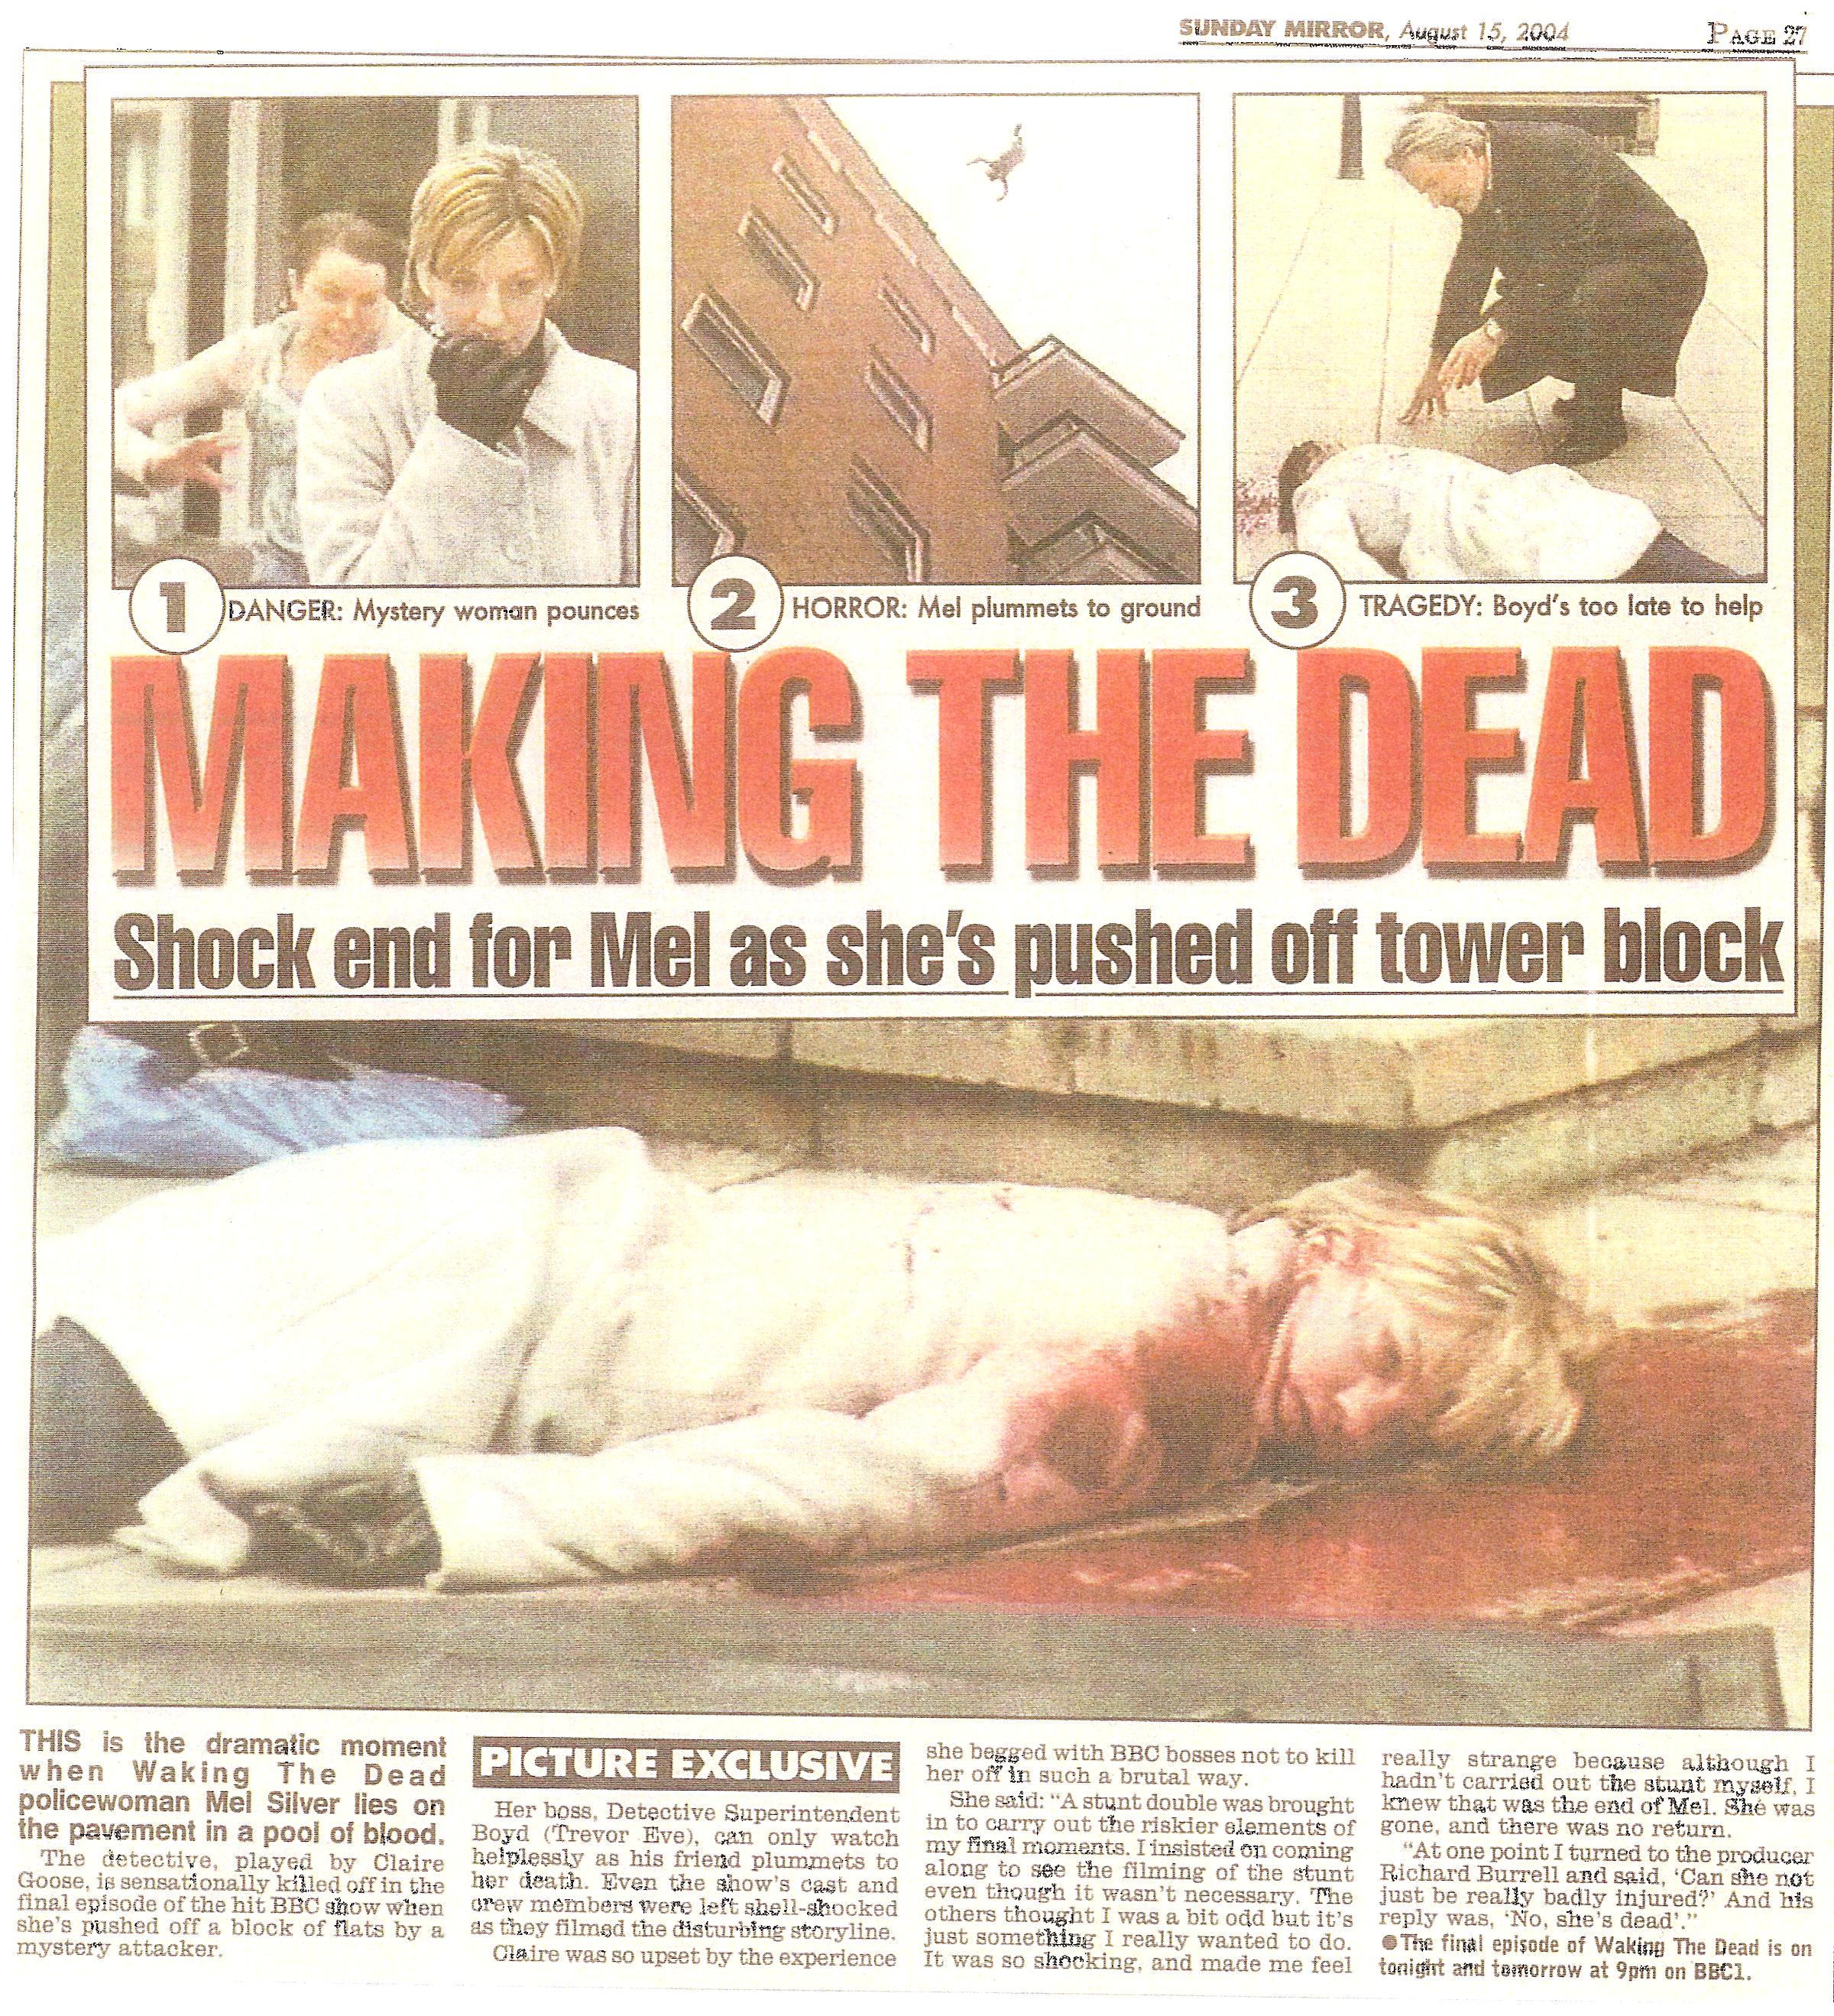 Waking The Dead High Fall Daily Mirror.jpg